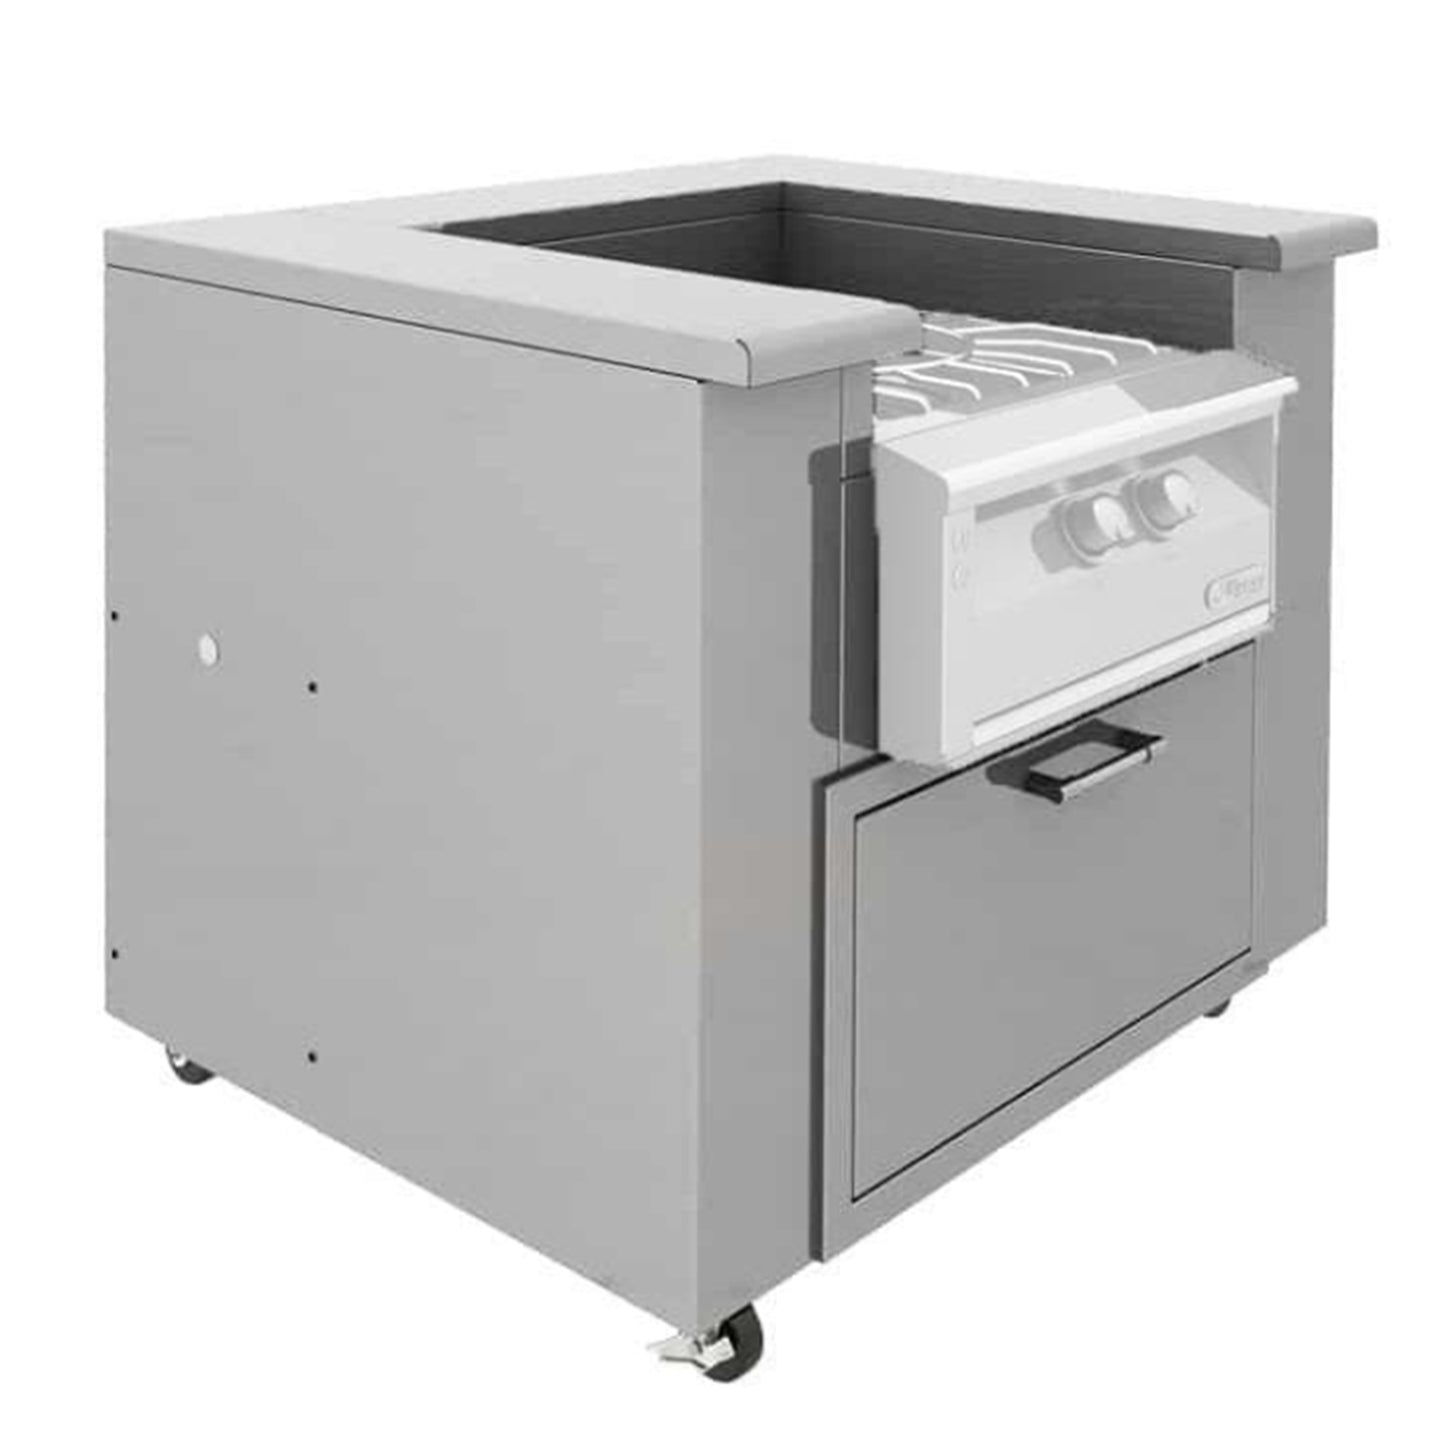 Alfresco Versa Power Stainless Steel Counter w/ Storage